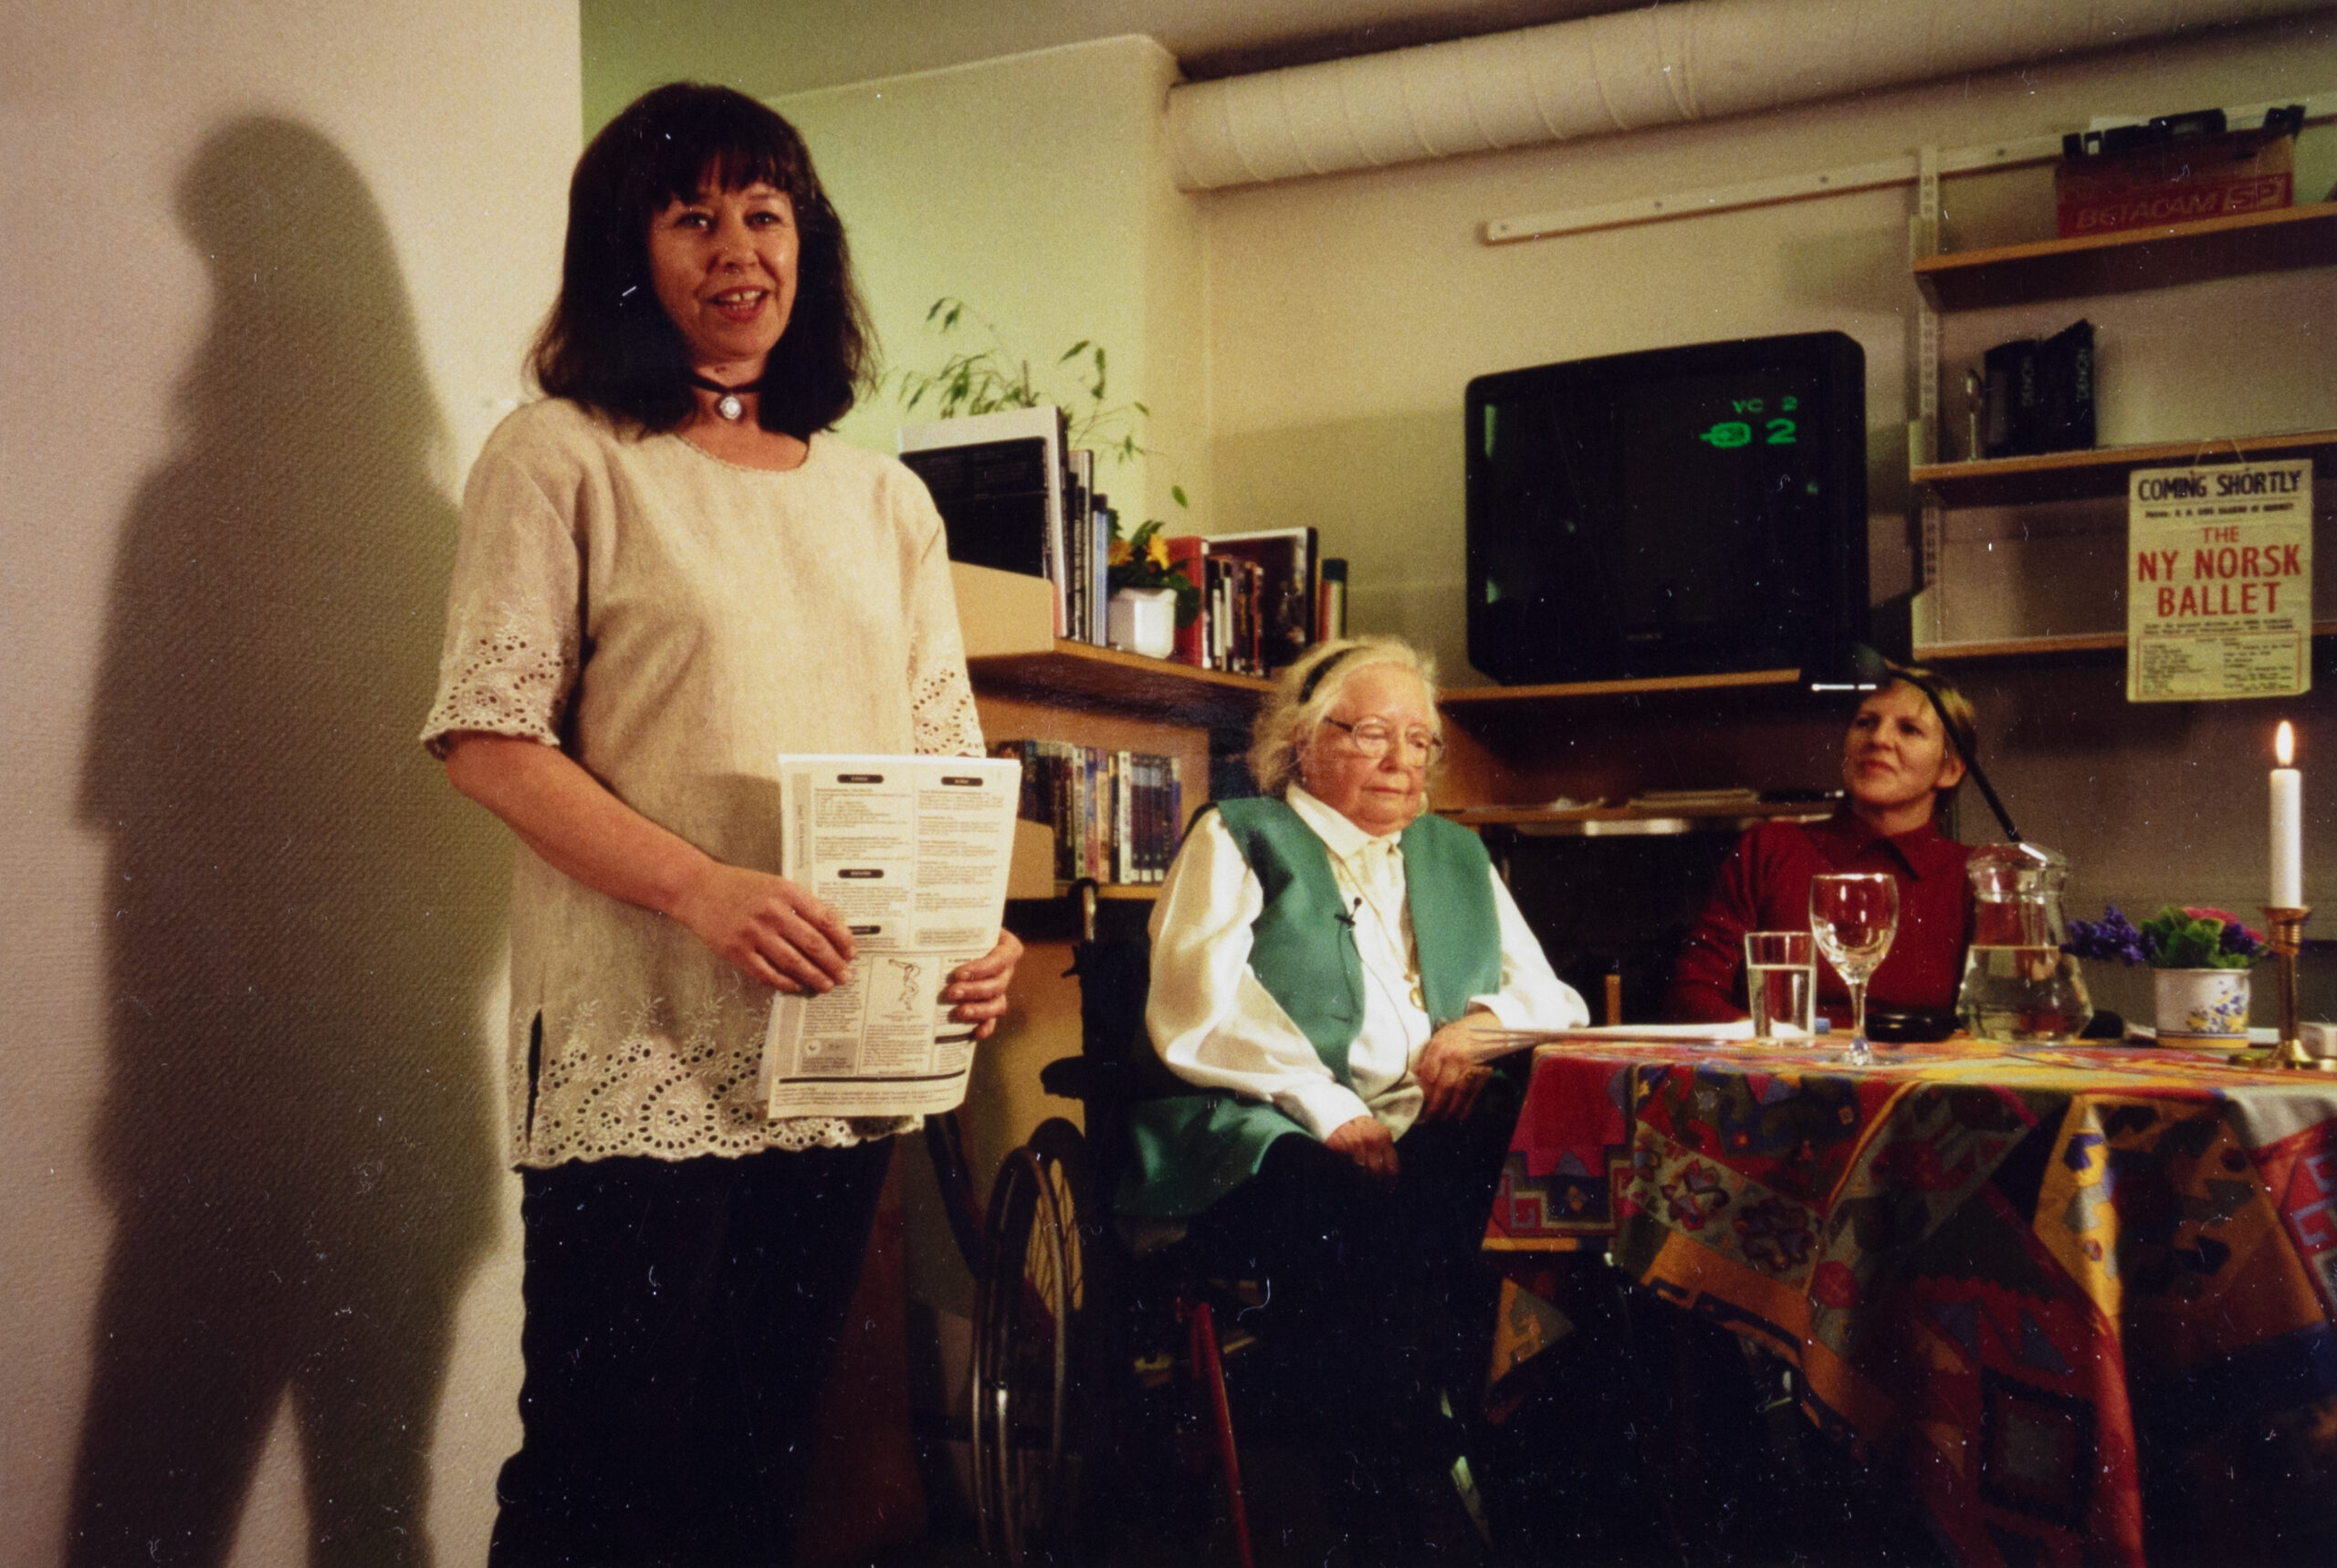 Den første æresprisen ble delt i 1995 på kontoret i Wessels gate 8, og prisen gikk til Gerd Kjølaas. På bildet fra venstre: Anne Brit Kjelsrud, Gerd Kjølaas og Tone Westad.